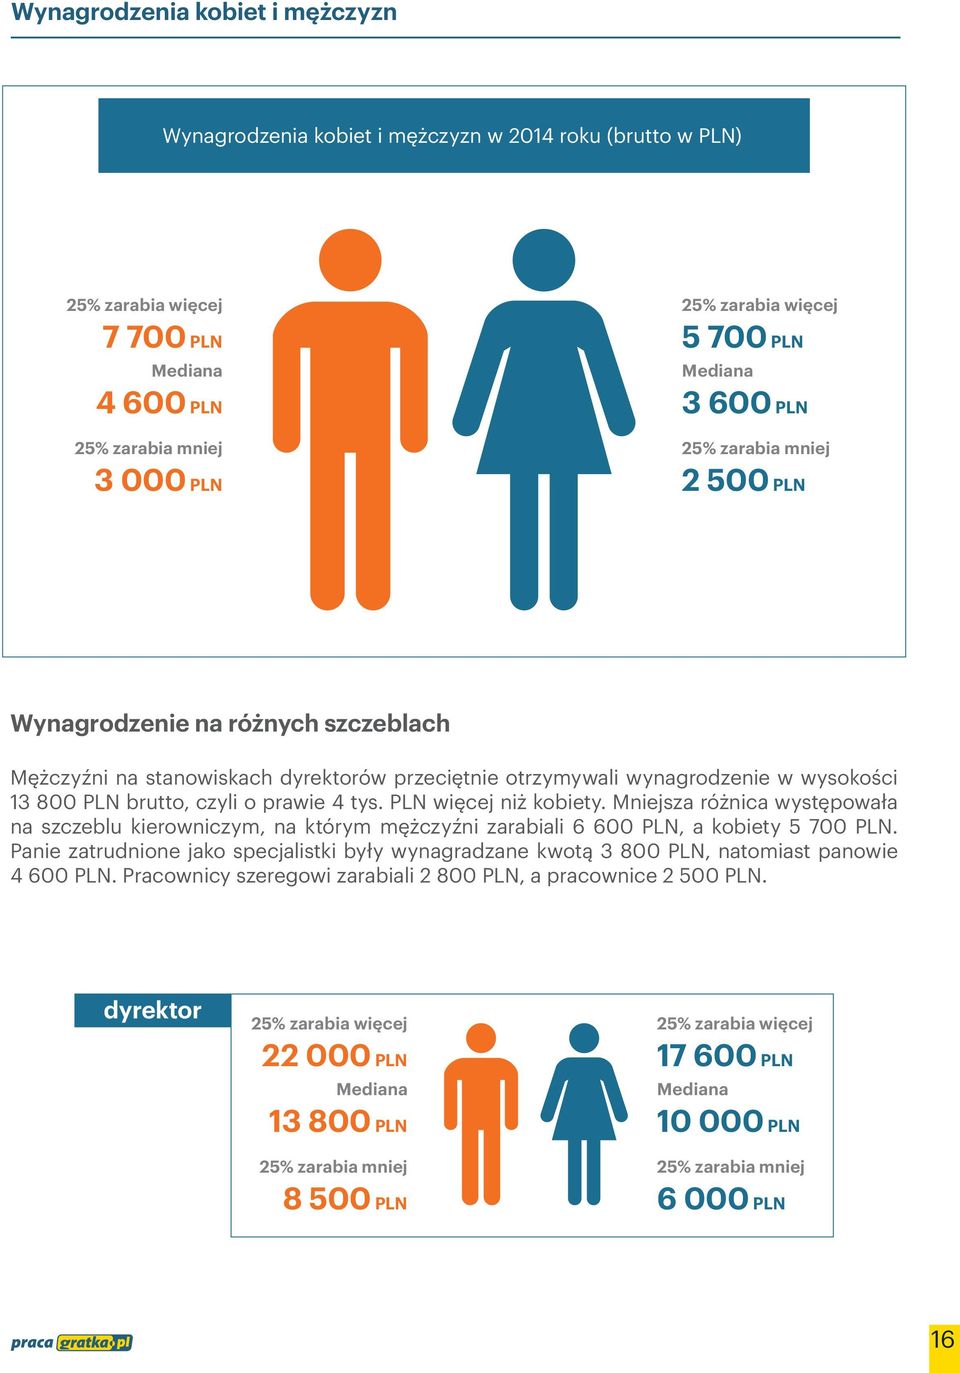 Mniejsza różnica występowała na szczeblu kierowniczym, na którym mężczyźni zarabiali 6 600 PLN, a kobiety 5 700 PLN.